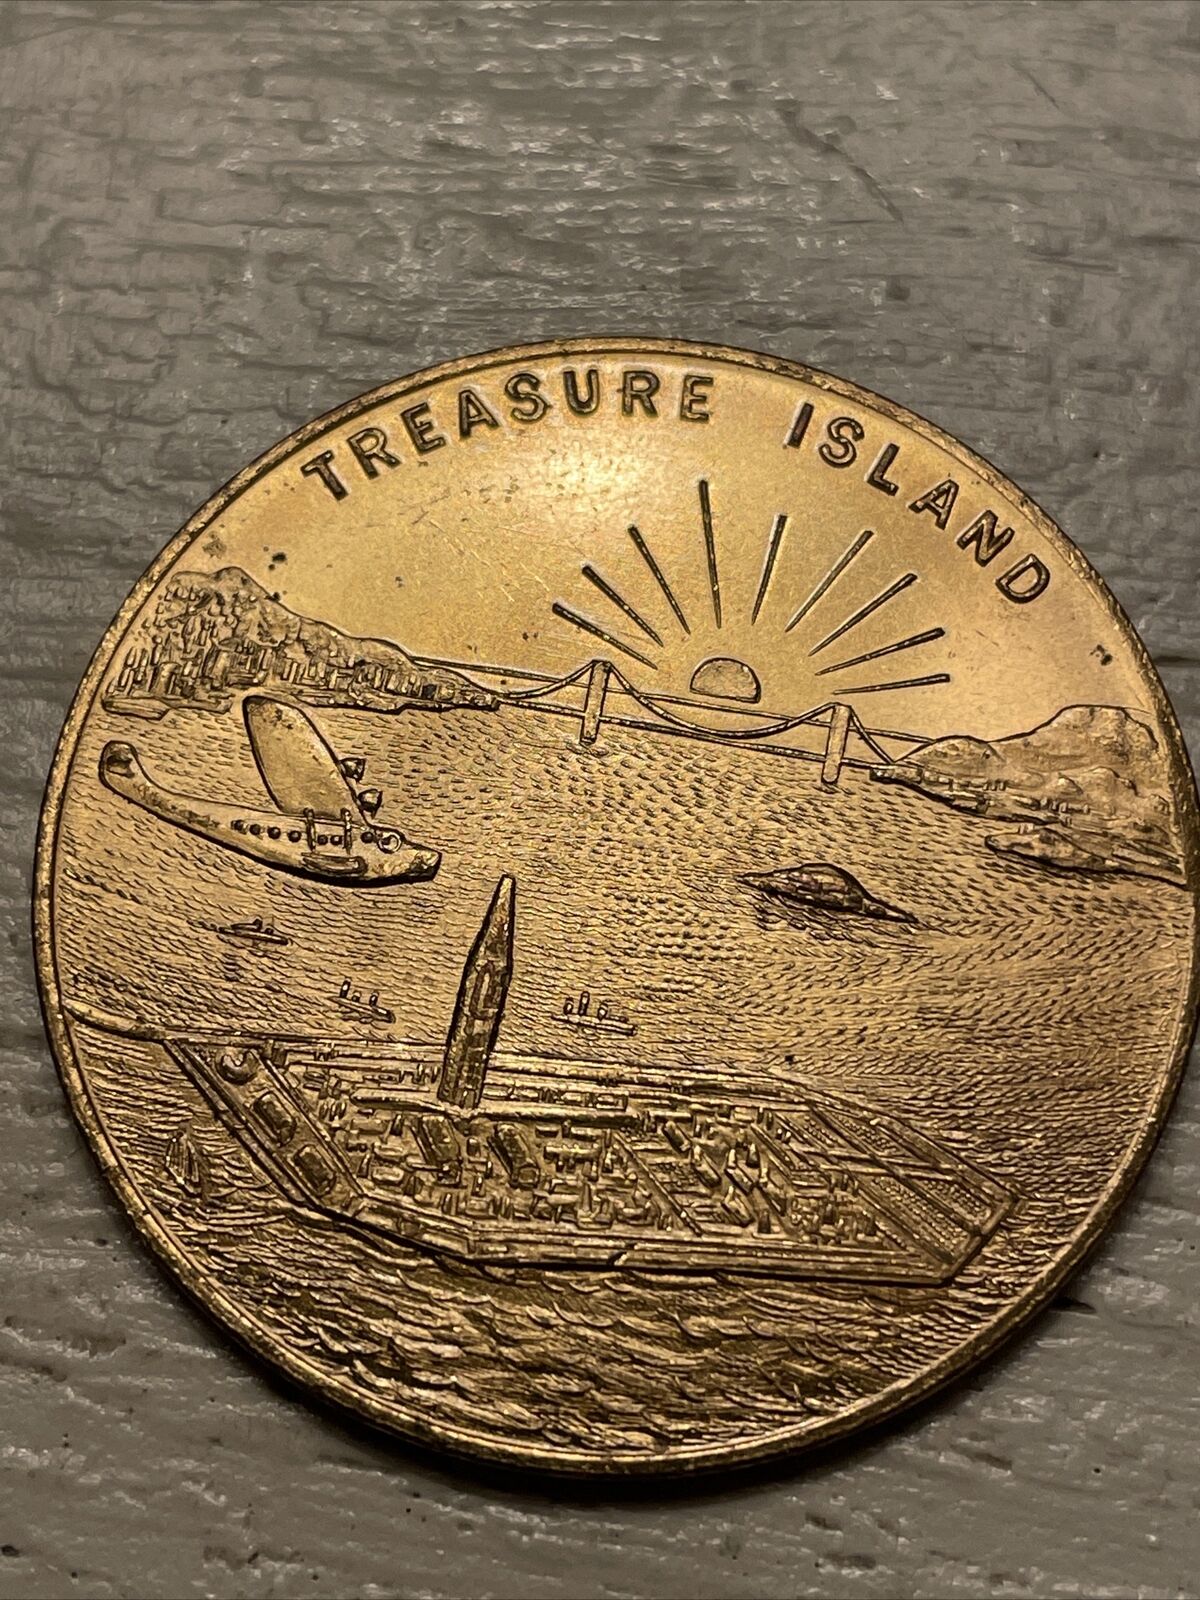 1939 Golden Gate International Exposition Coin San Francisco Bay Treasure Island